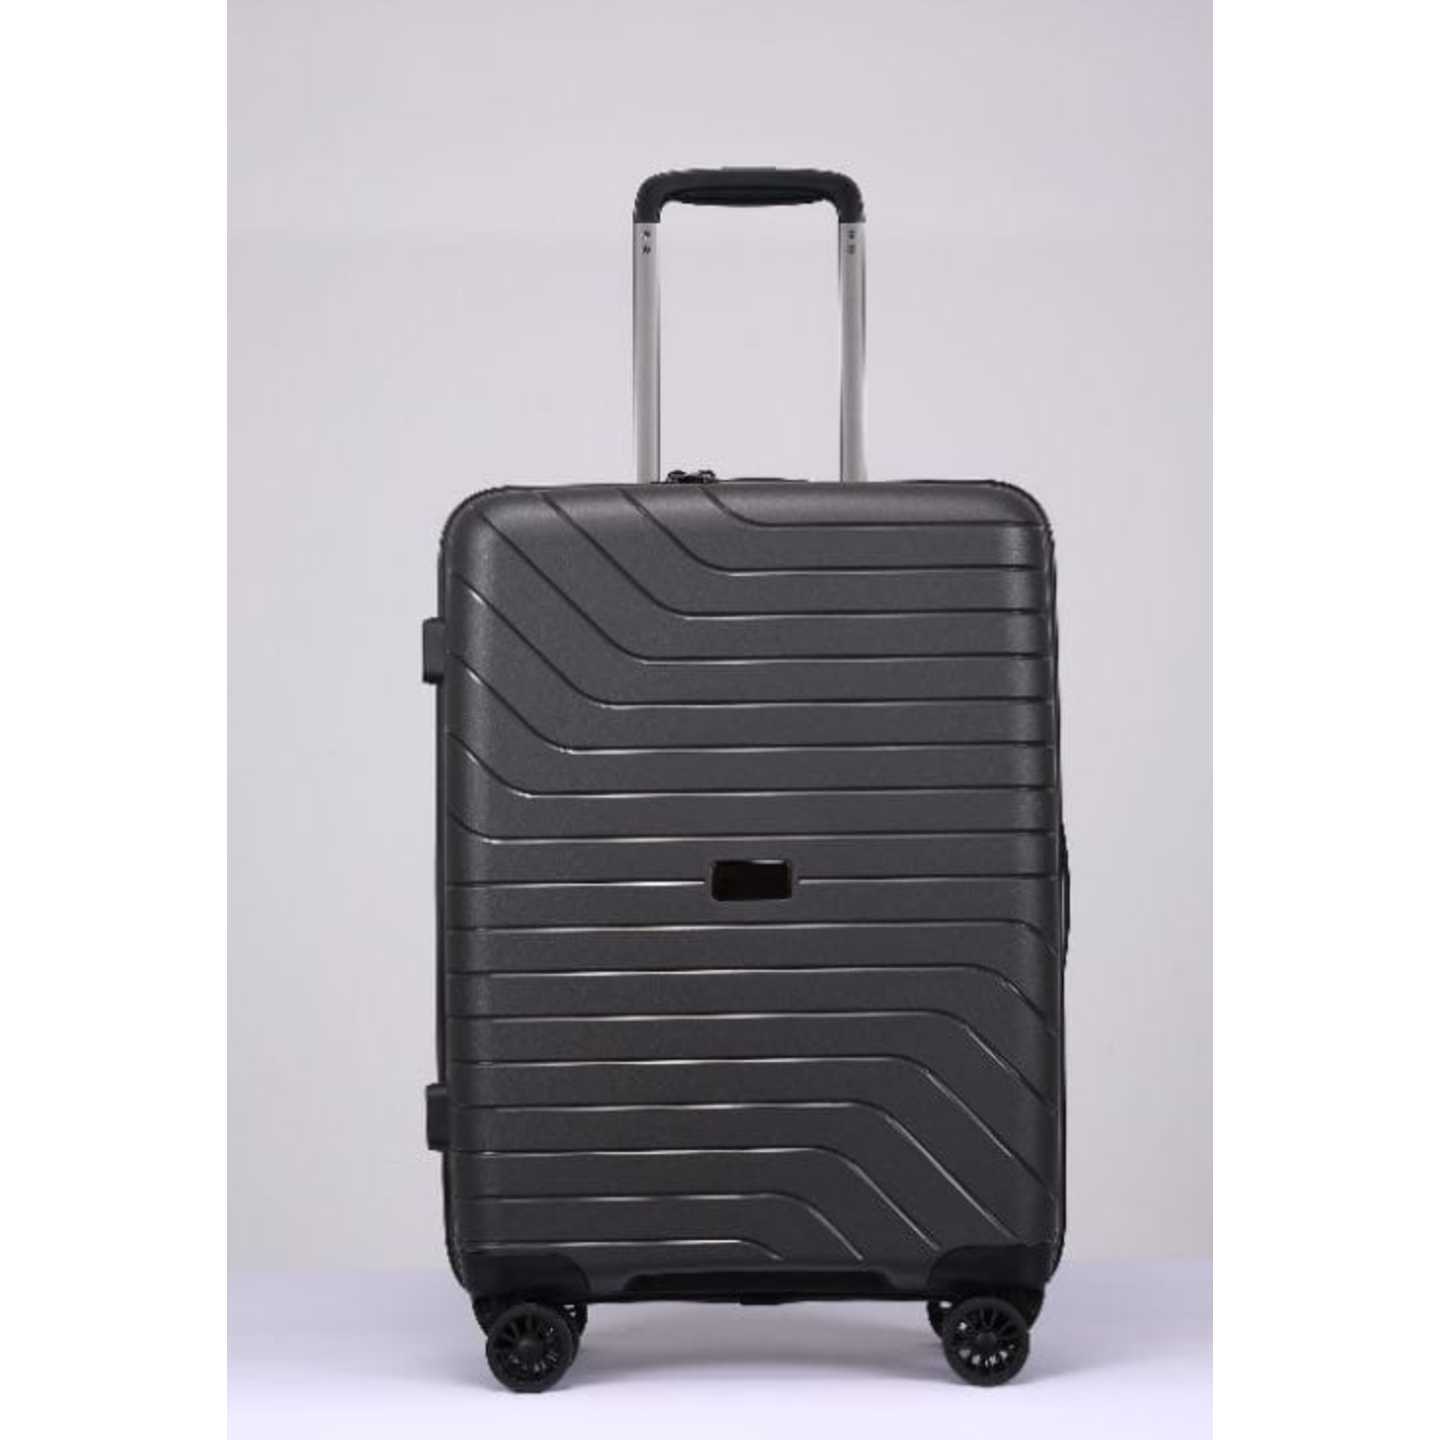 RV-88 Elegant Hard Box Luggage - Black  20 inch